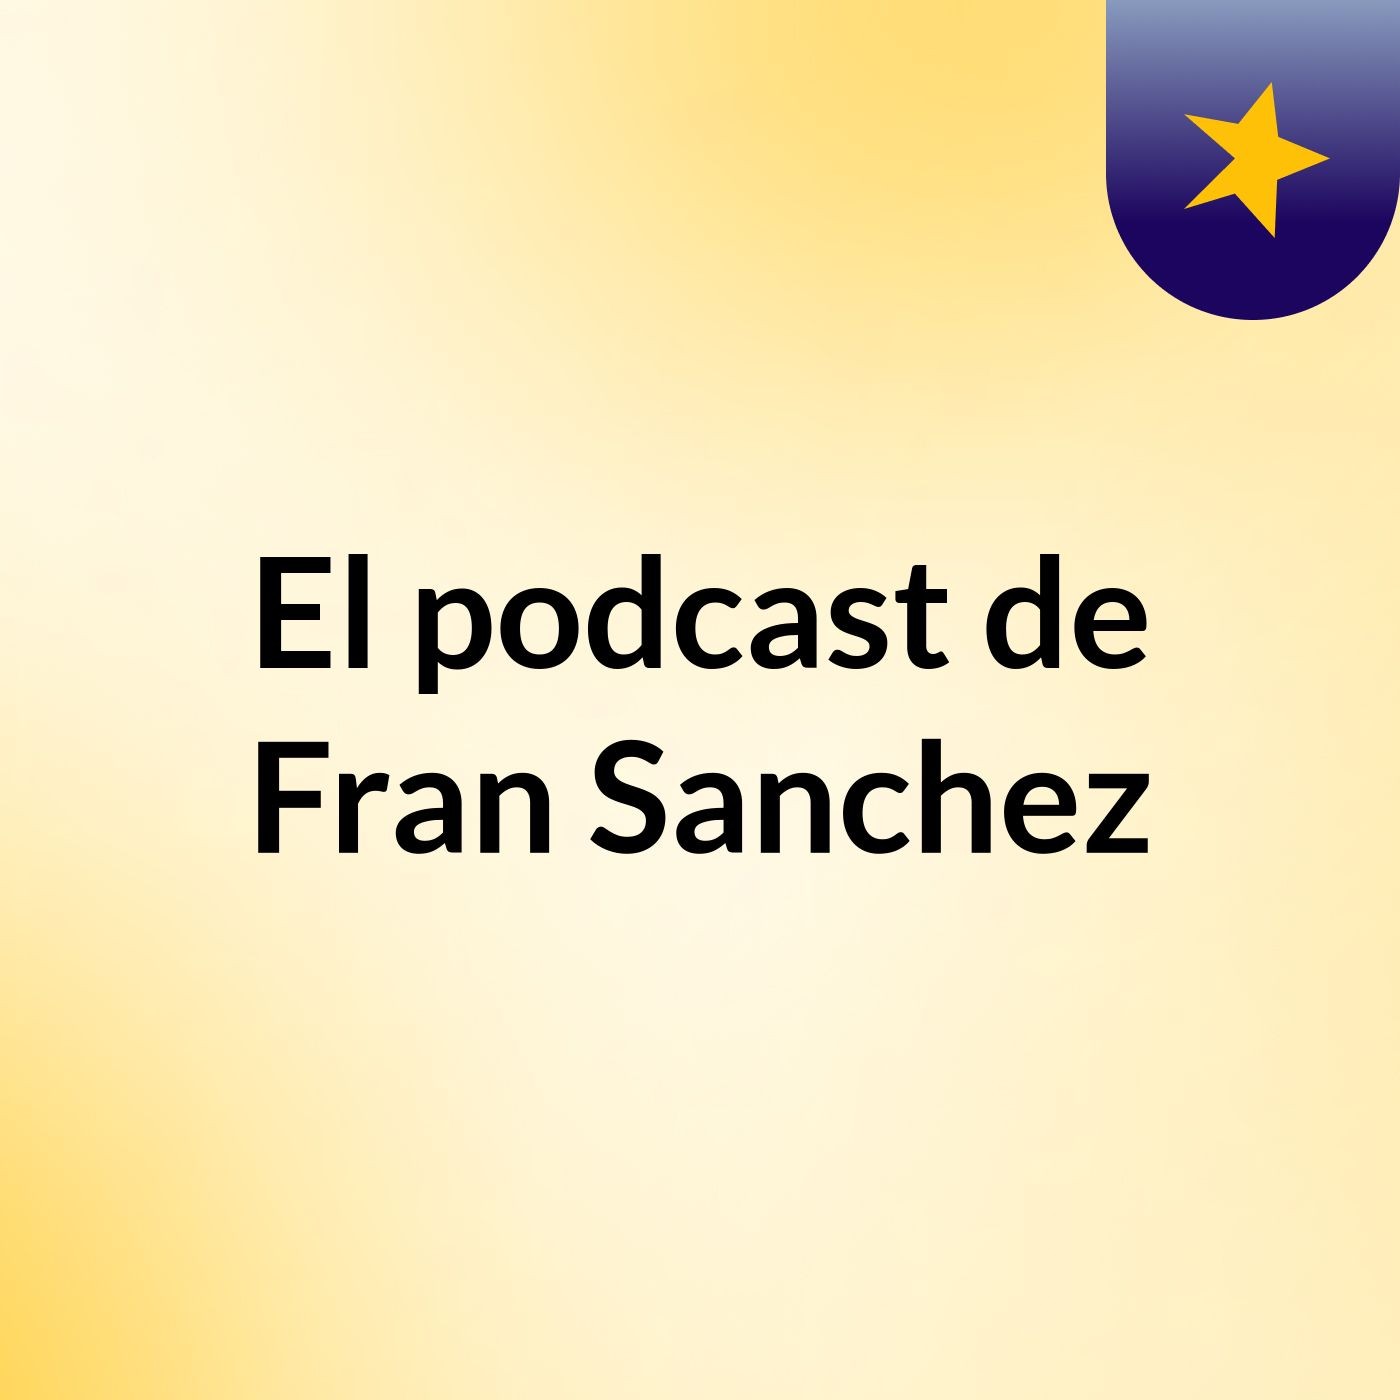 El podcast de Fran Sanchez